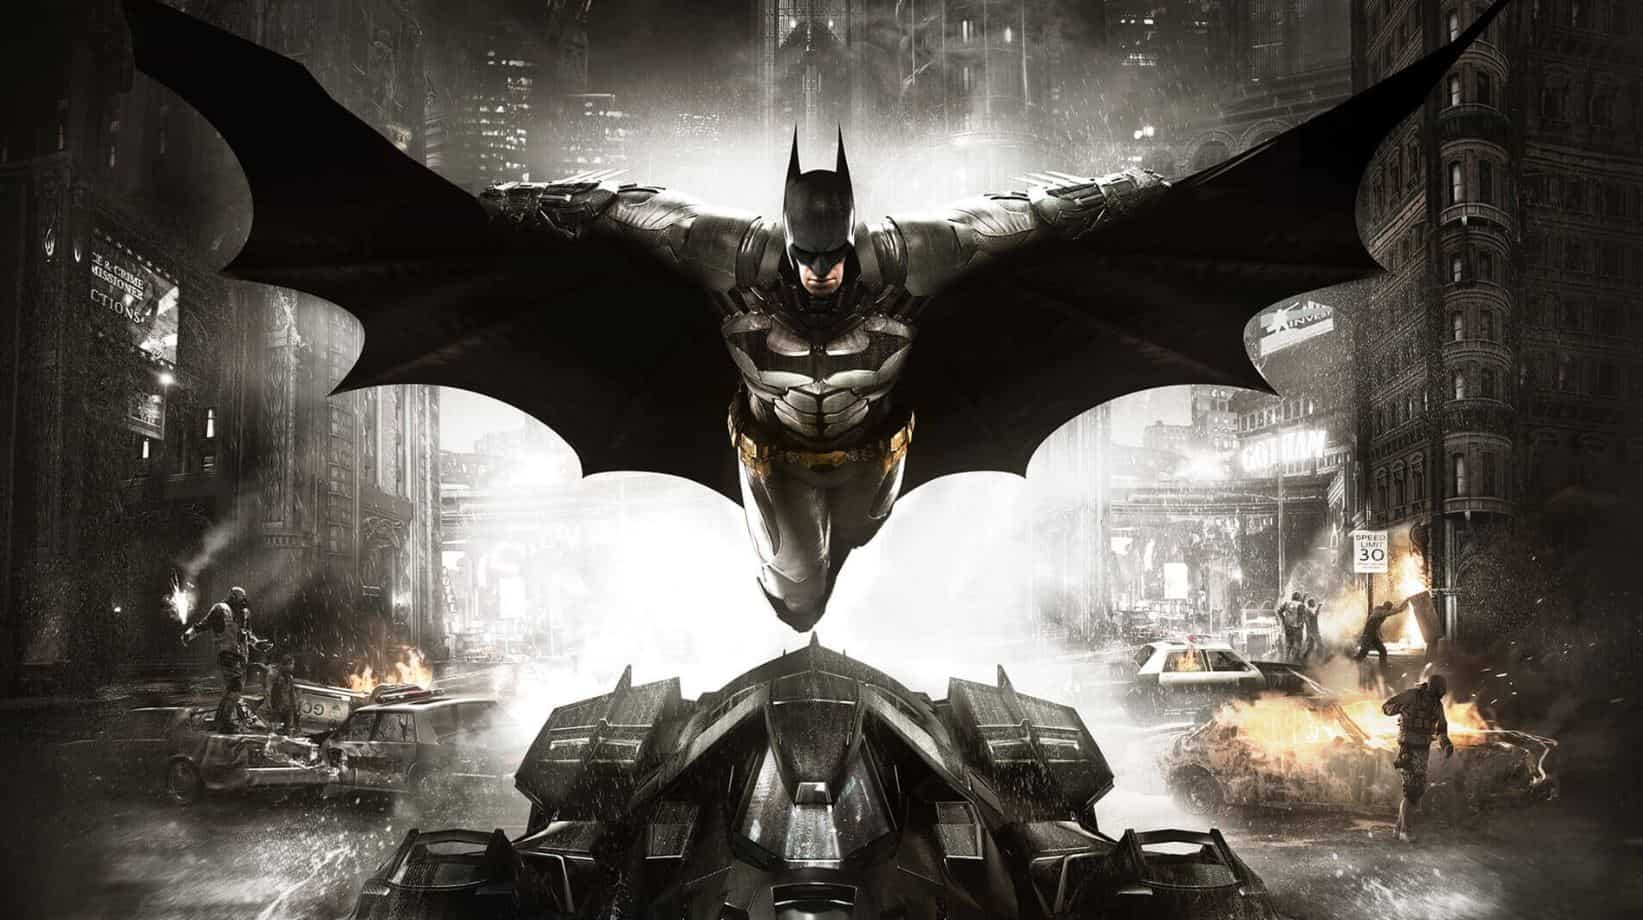  华纳蒙特工作室暗示《蝙蝠侠》的新作品将于明天公之于众。